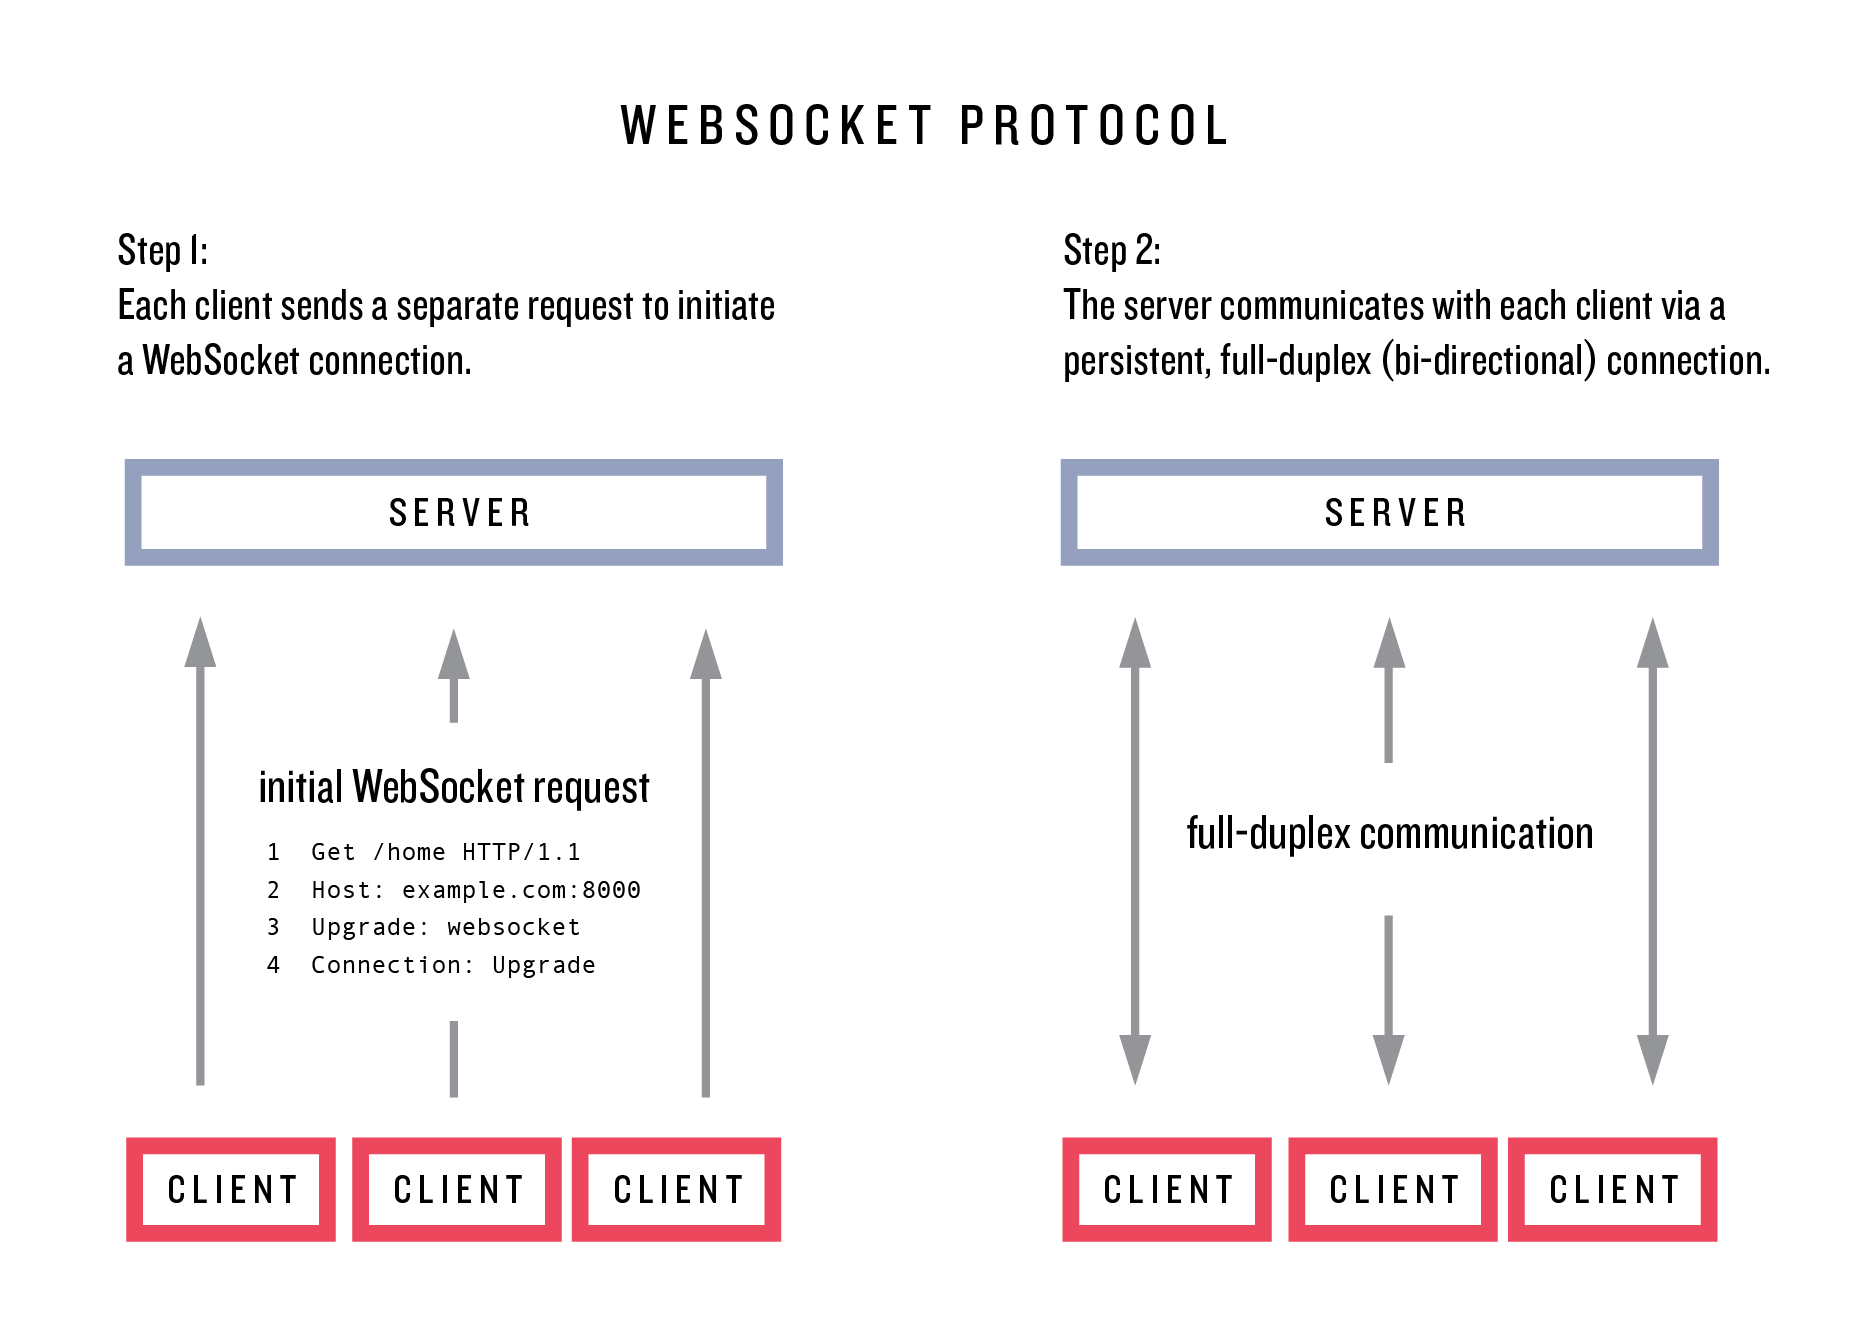 images/figures/websocket_protocol